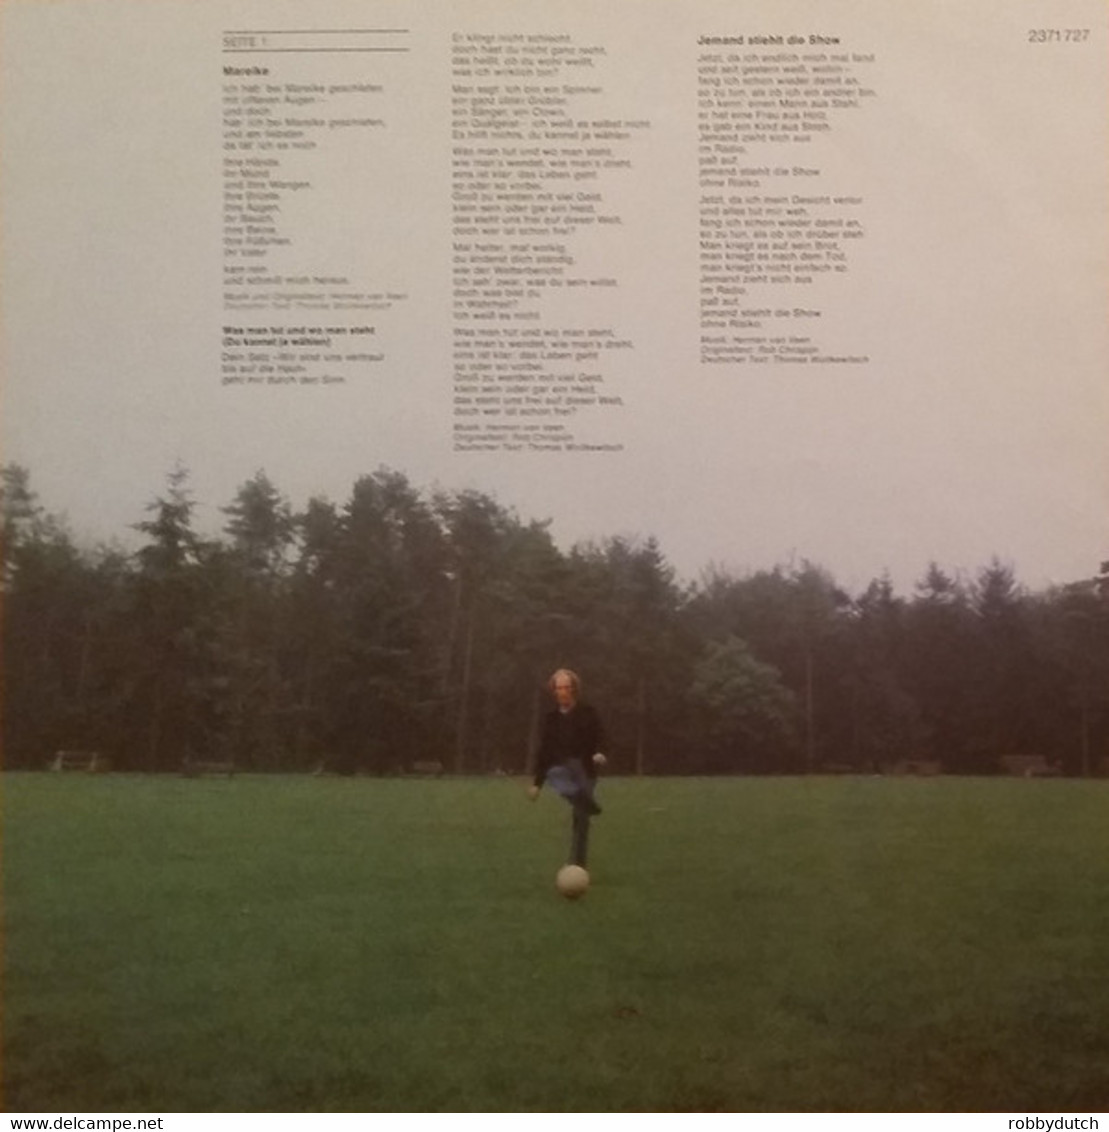 * LP *  HERMAN VAN VEEN - AN EINE FERNE PRINZESSIN (Germany 1977) - Sonstige - Deutsche Musik